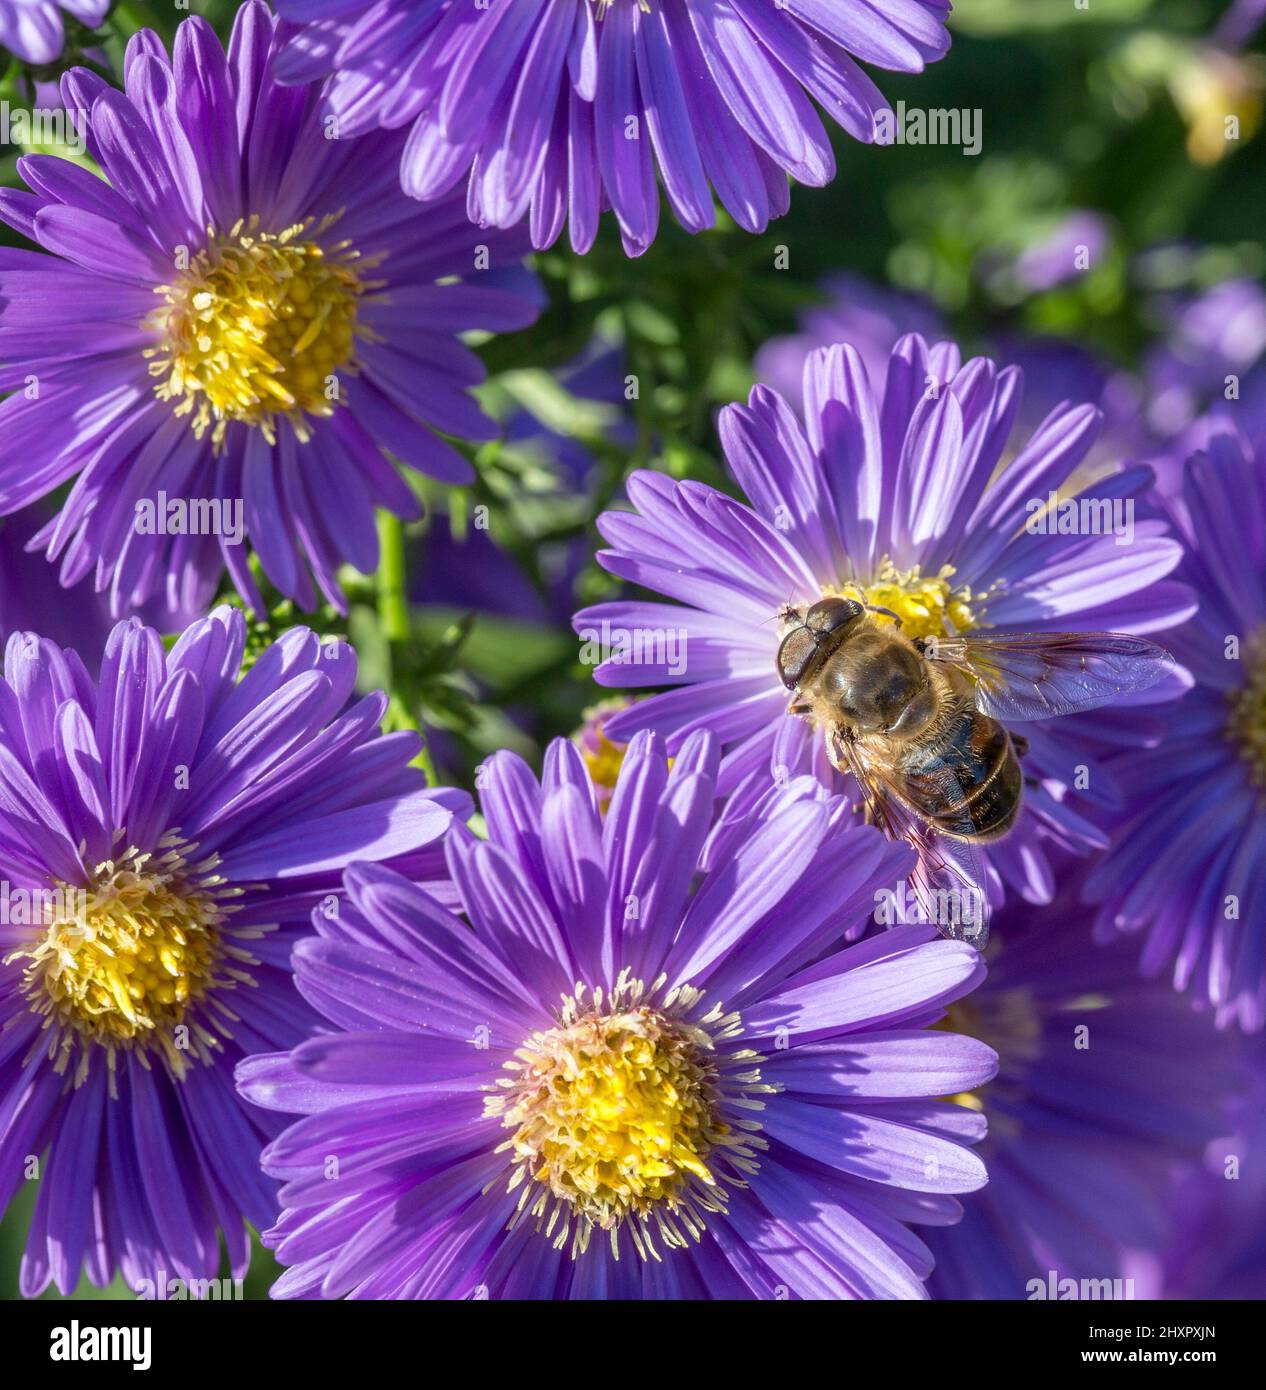 Violetta autunno aster con bee alla ricerca di polline Foto Stock